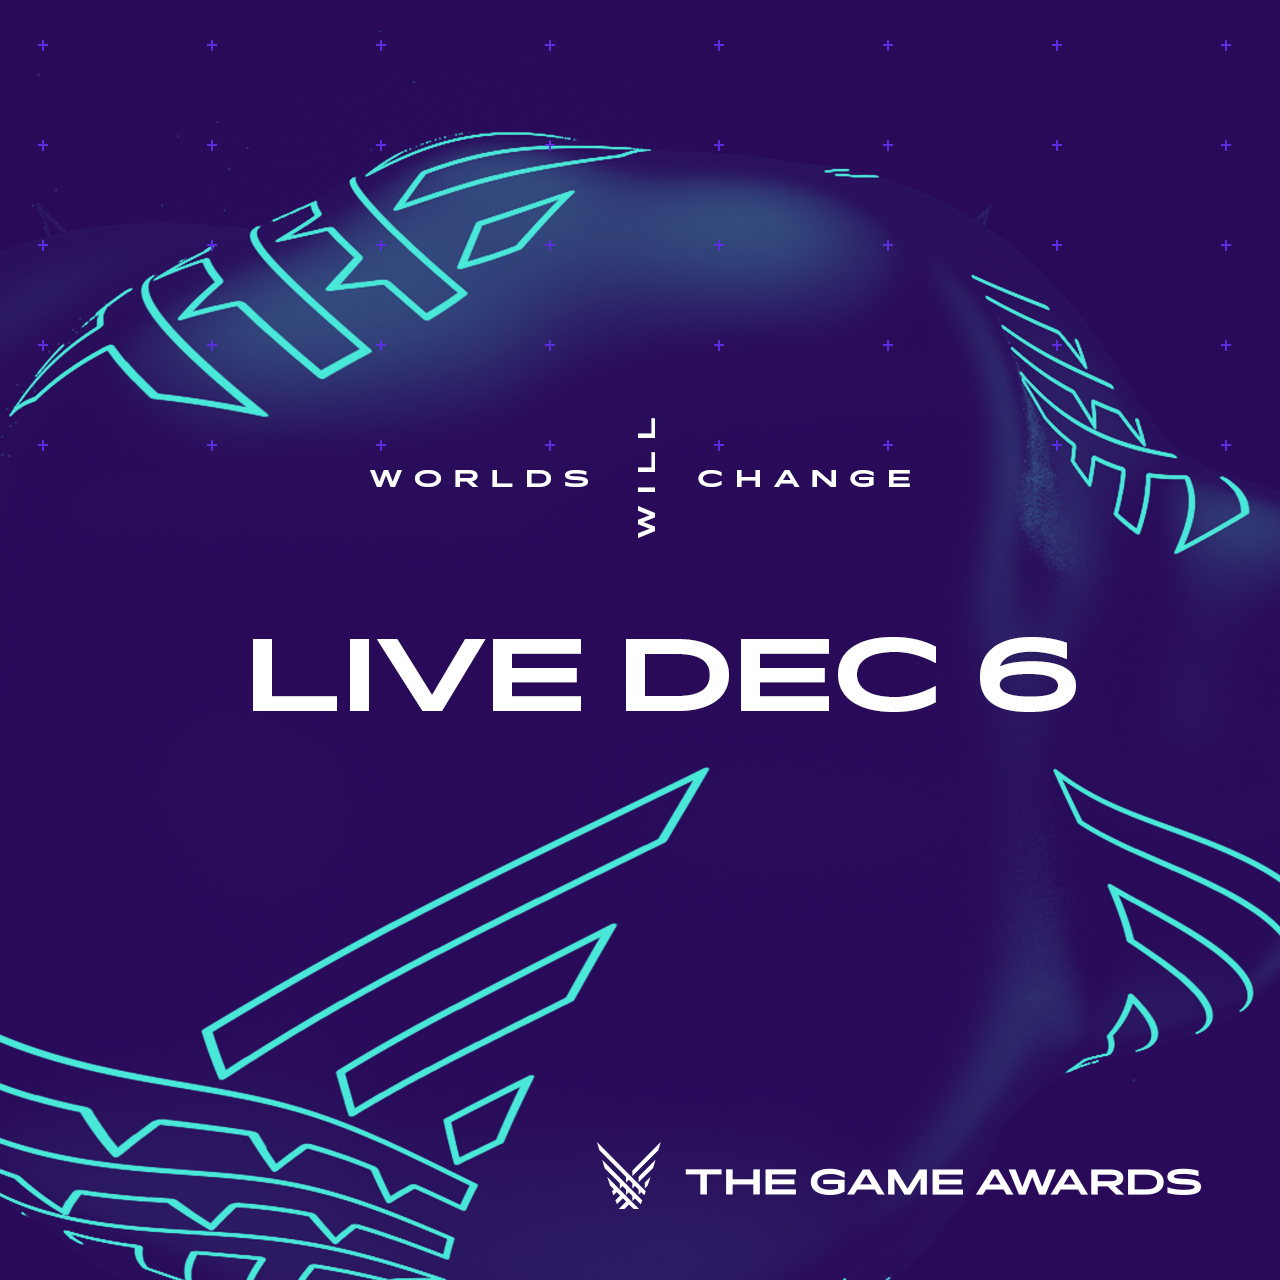 2018 Game Awards - Show, Los Angeles, USA, 6 Dec 2018